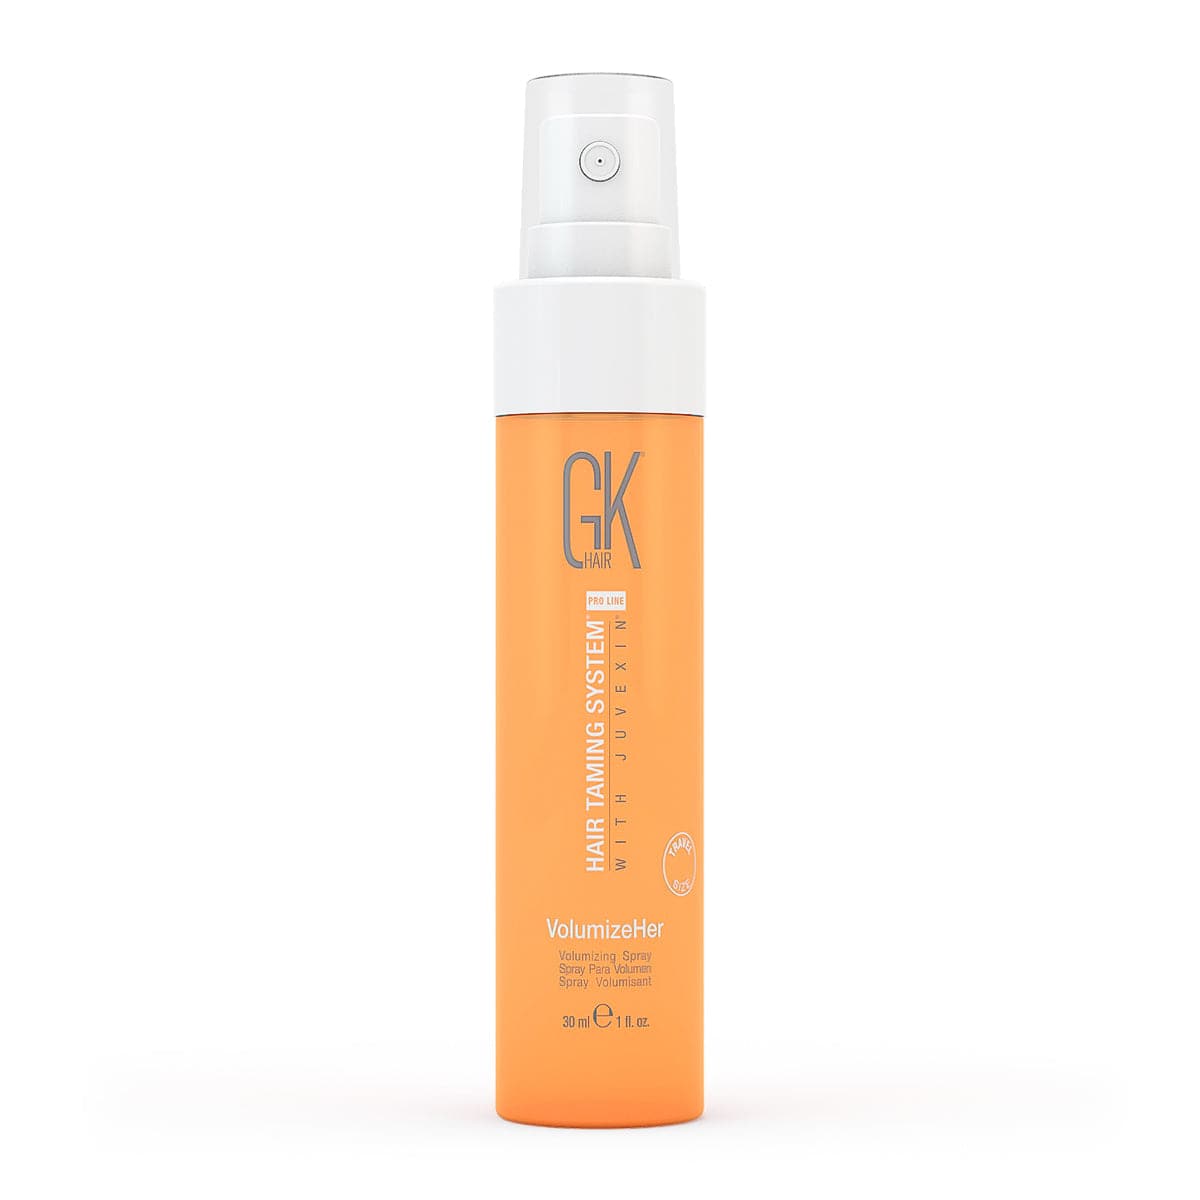 VolumizeHer Spray creates weightless Hair Volume | GK Hair